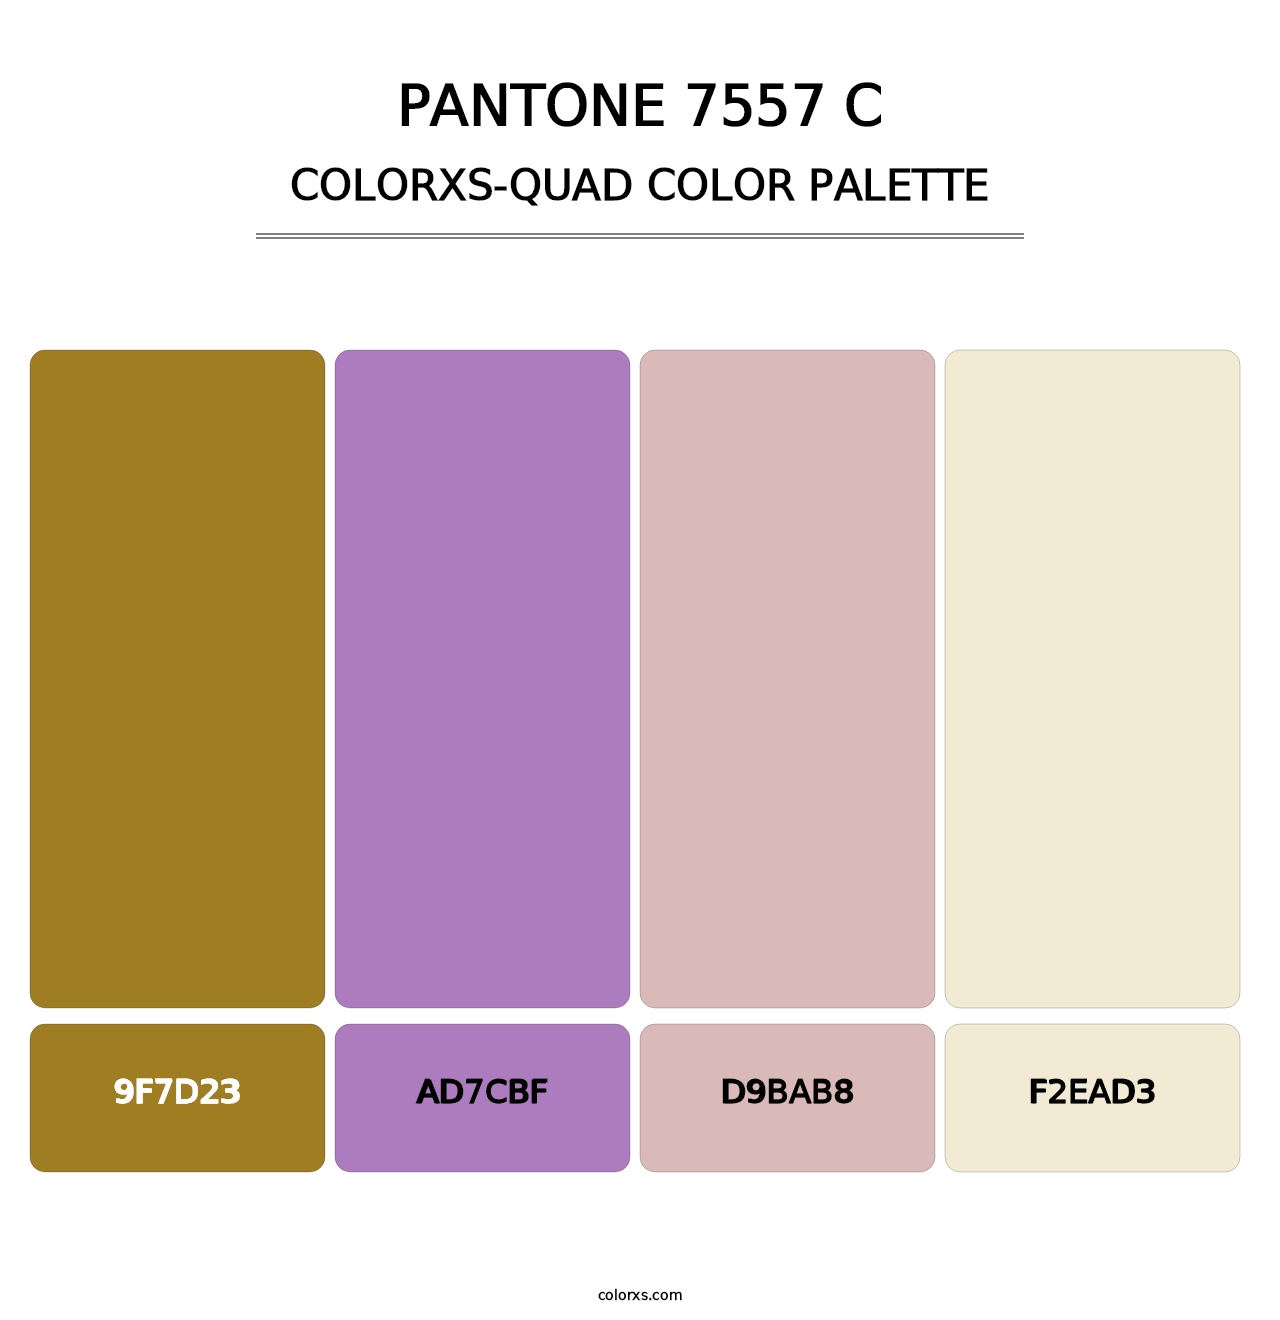 PANTONE 7557 C - Colorxs Quad Palette